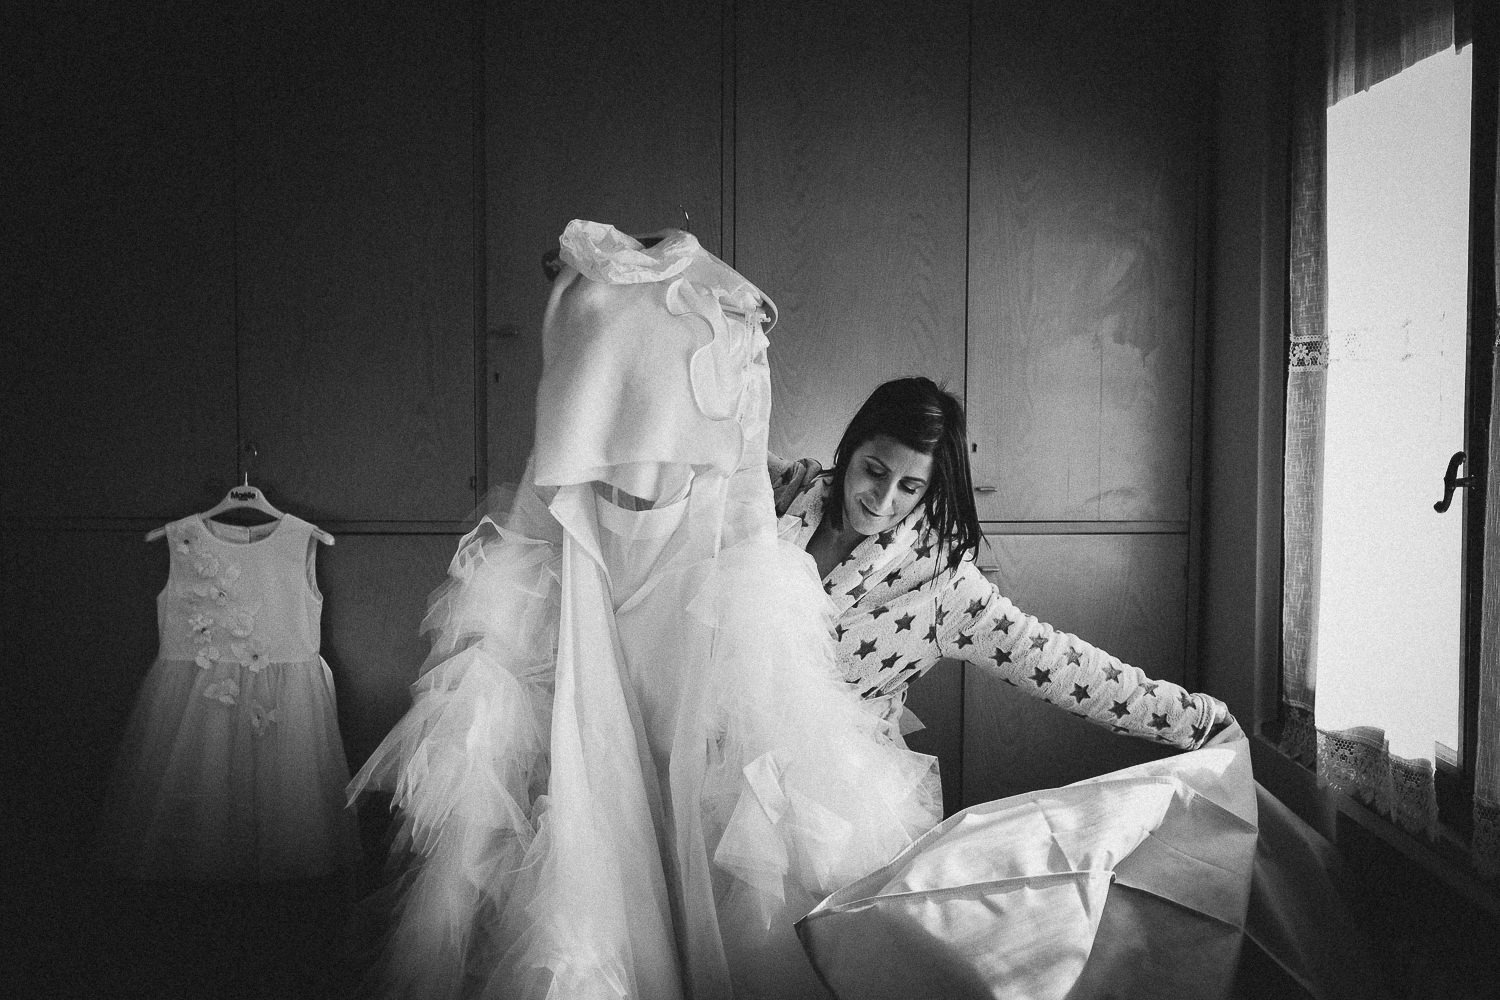 Preparazione-sposa-Francesco-Ferrarini-studio-fotografo-modena